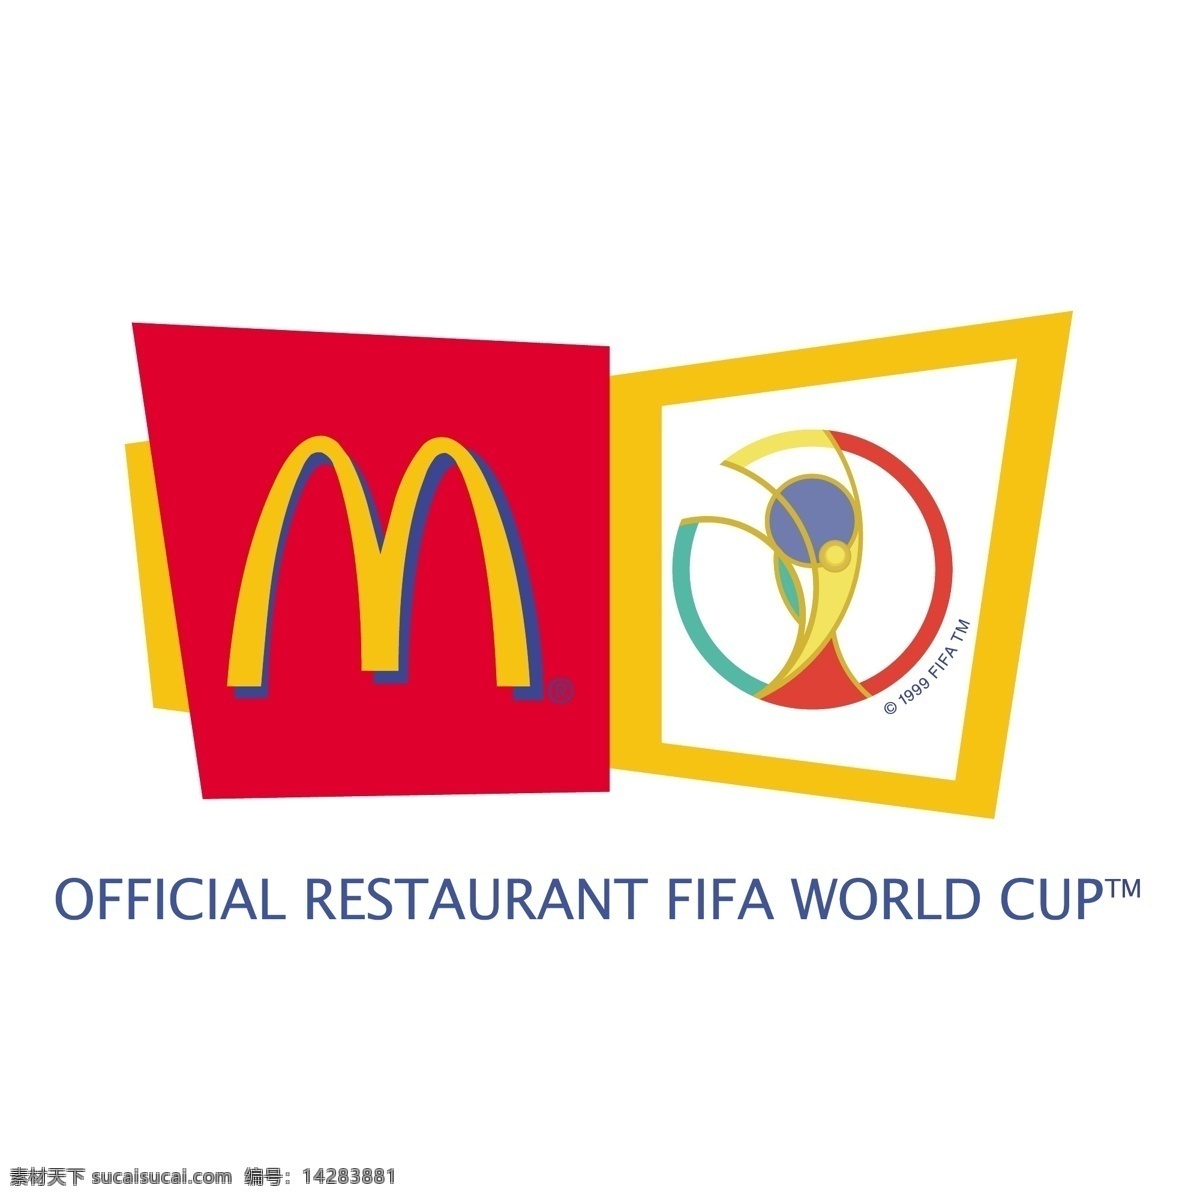 麦当劳 2002 国际足联 世界杯 赞助商 标识 公司 免费 品牌 品牌标识 商标 矢量标志下载 免费矢量标识 矢量 psd源文件 logo设计